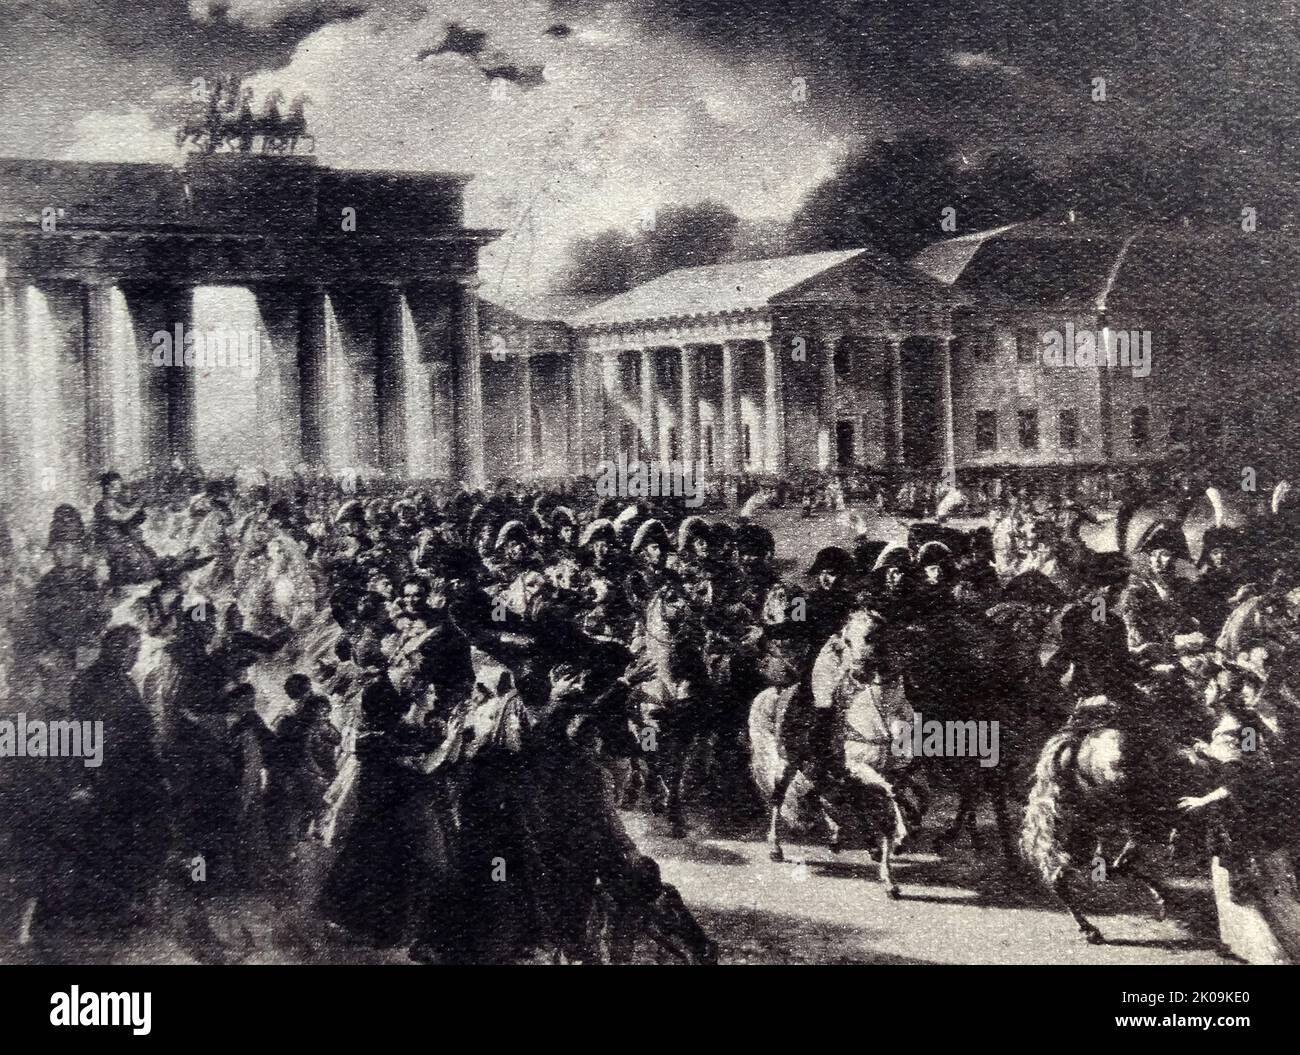 Napoleone entra a Berlino, 1806. La caduta di Berlino ebbe luogo il 27 ottobre 1806, quando la capitale prussiana di Berlino fu catturata dalle forze francesi dopo la battaglia di Jena-Auerstedt. L'imperatore francese Napoleone Bonaparte entrò nella città, da cui emise il suo Decreto di Berlino implementando il suo sistema continentale. Si è svolto un saccheggio su larga scala di Berlino. Foto Stock